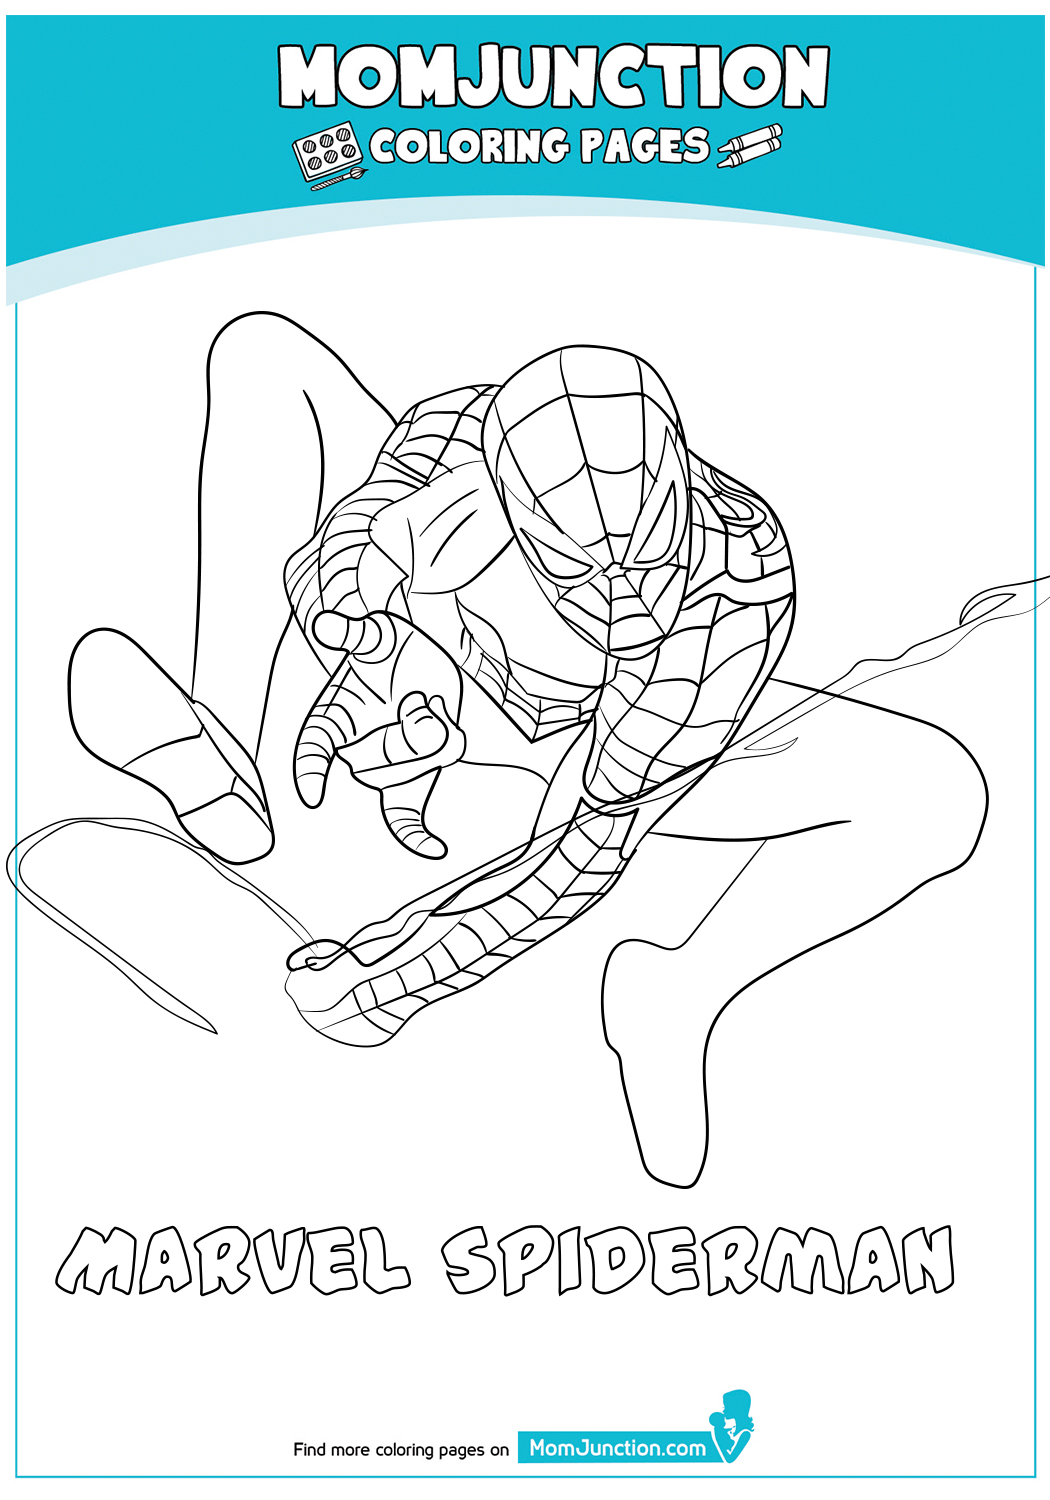 Marvel-Spiderman